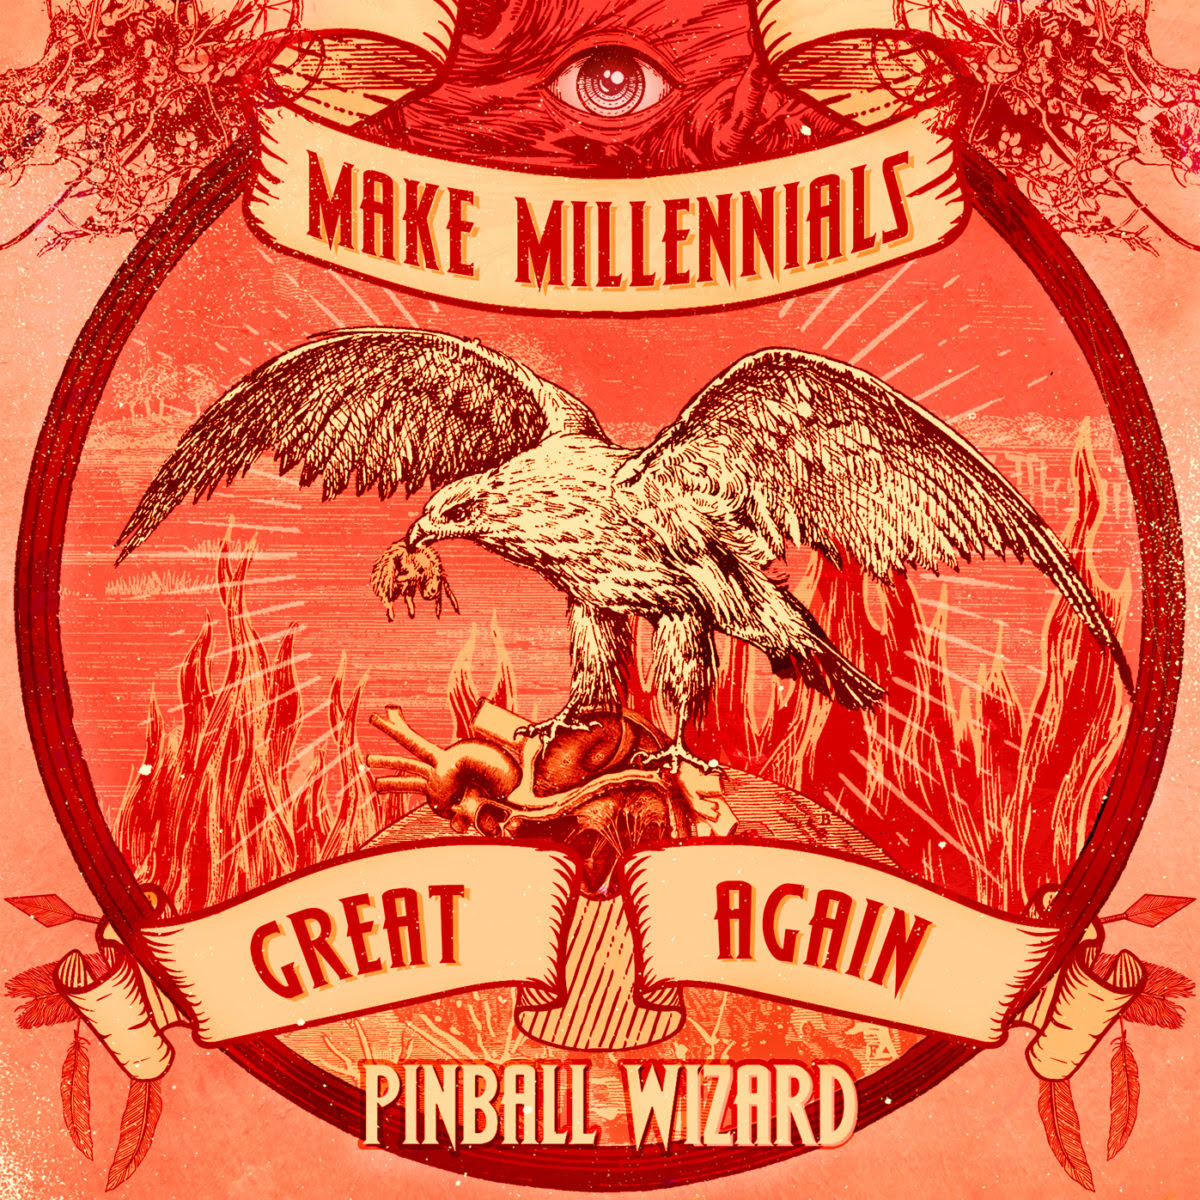 PINBALL WIZARD desvelan PORTADA + TRACKLIST + FECHA DE LANZAMIENTO de su nuevo EP “Make Millennials Great Again”